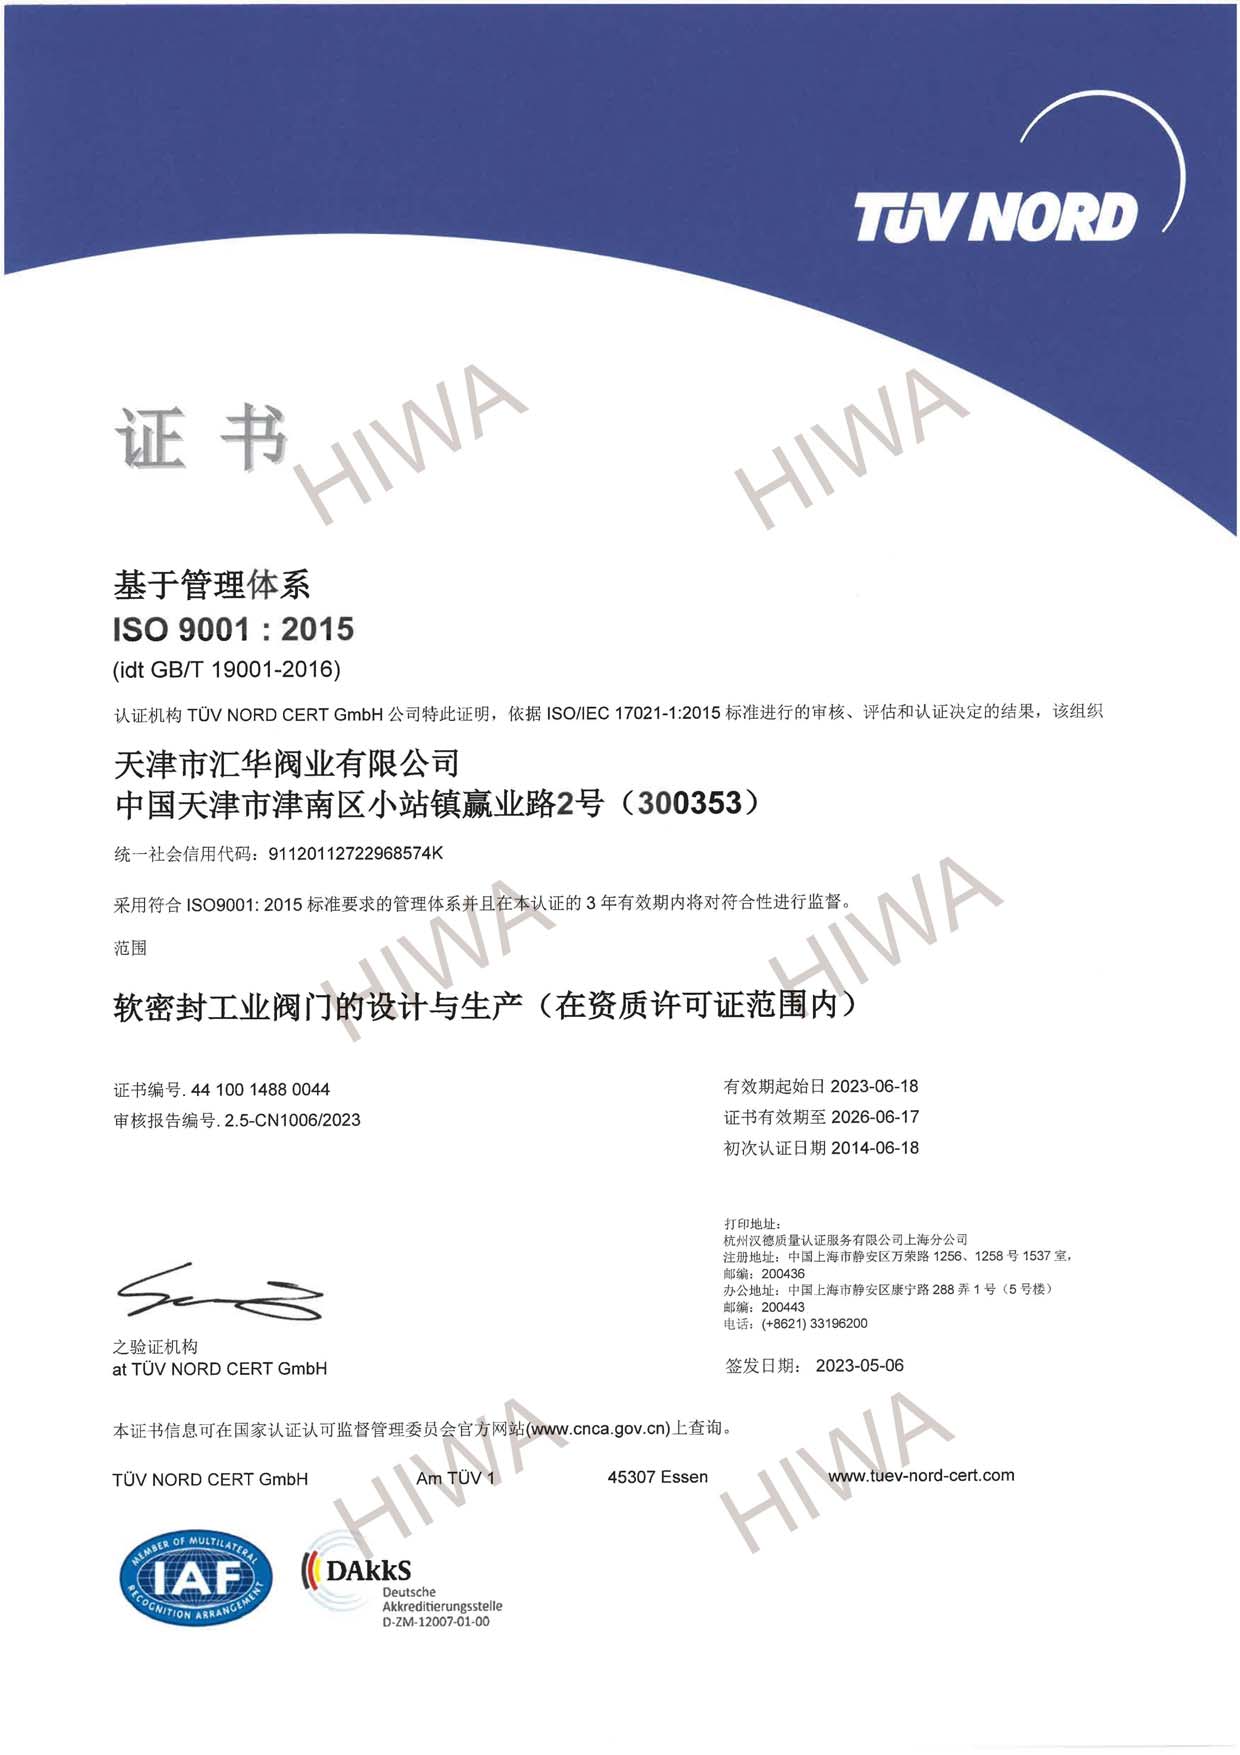 TIANJIN HUIHUA ISO9001